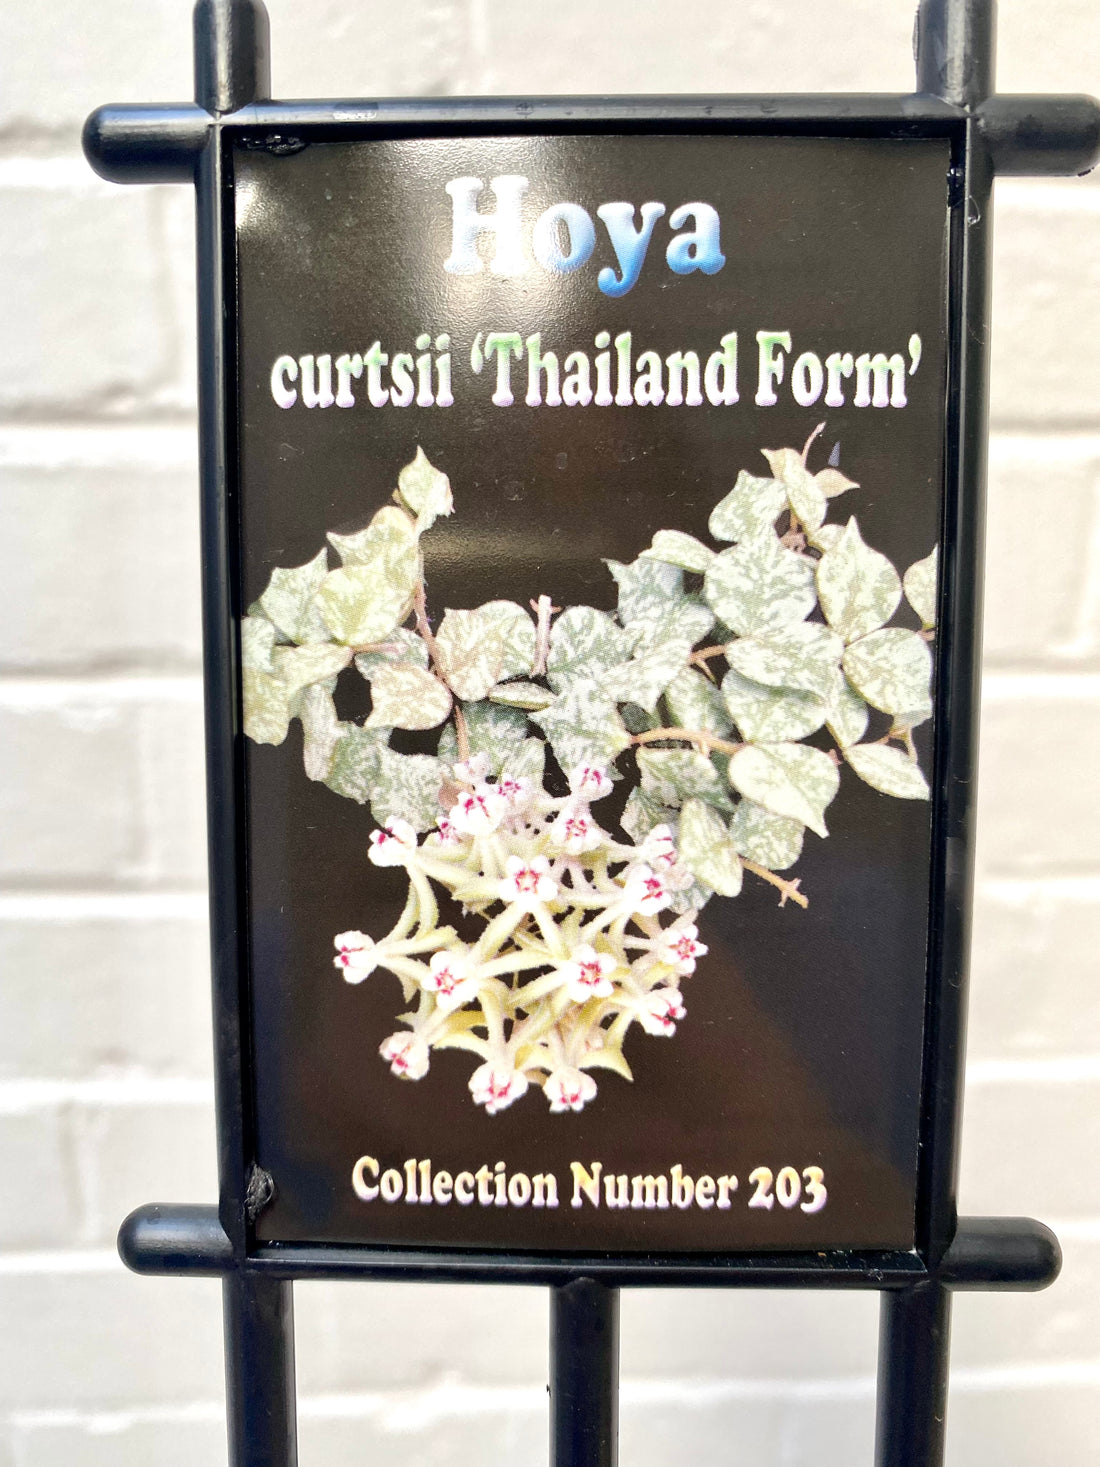 Hoya curtsii Thailand Form | 203